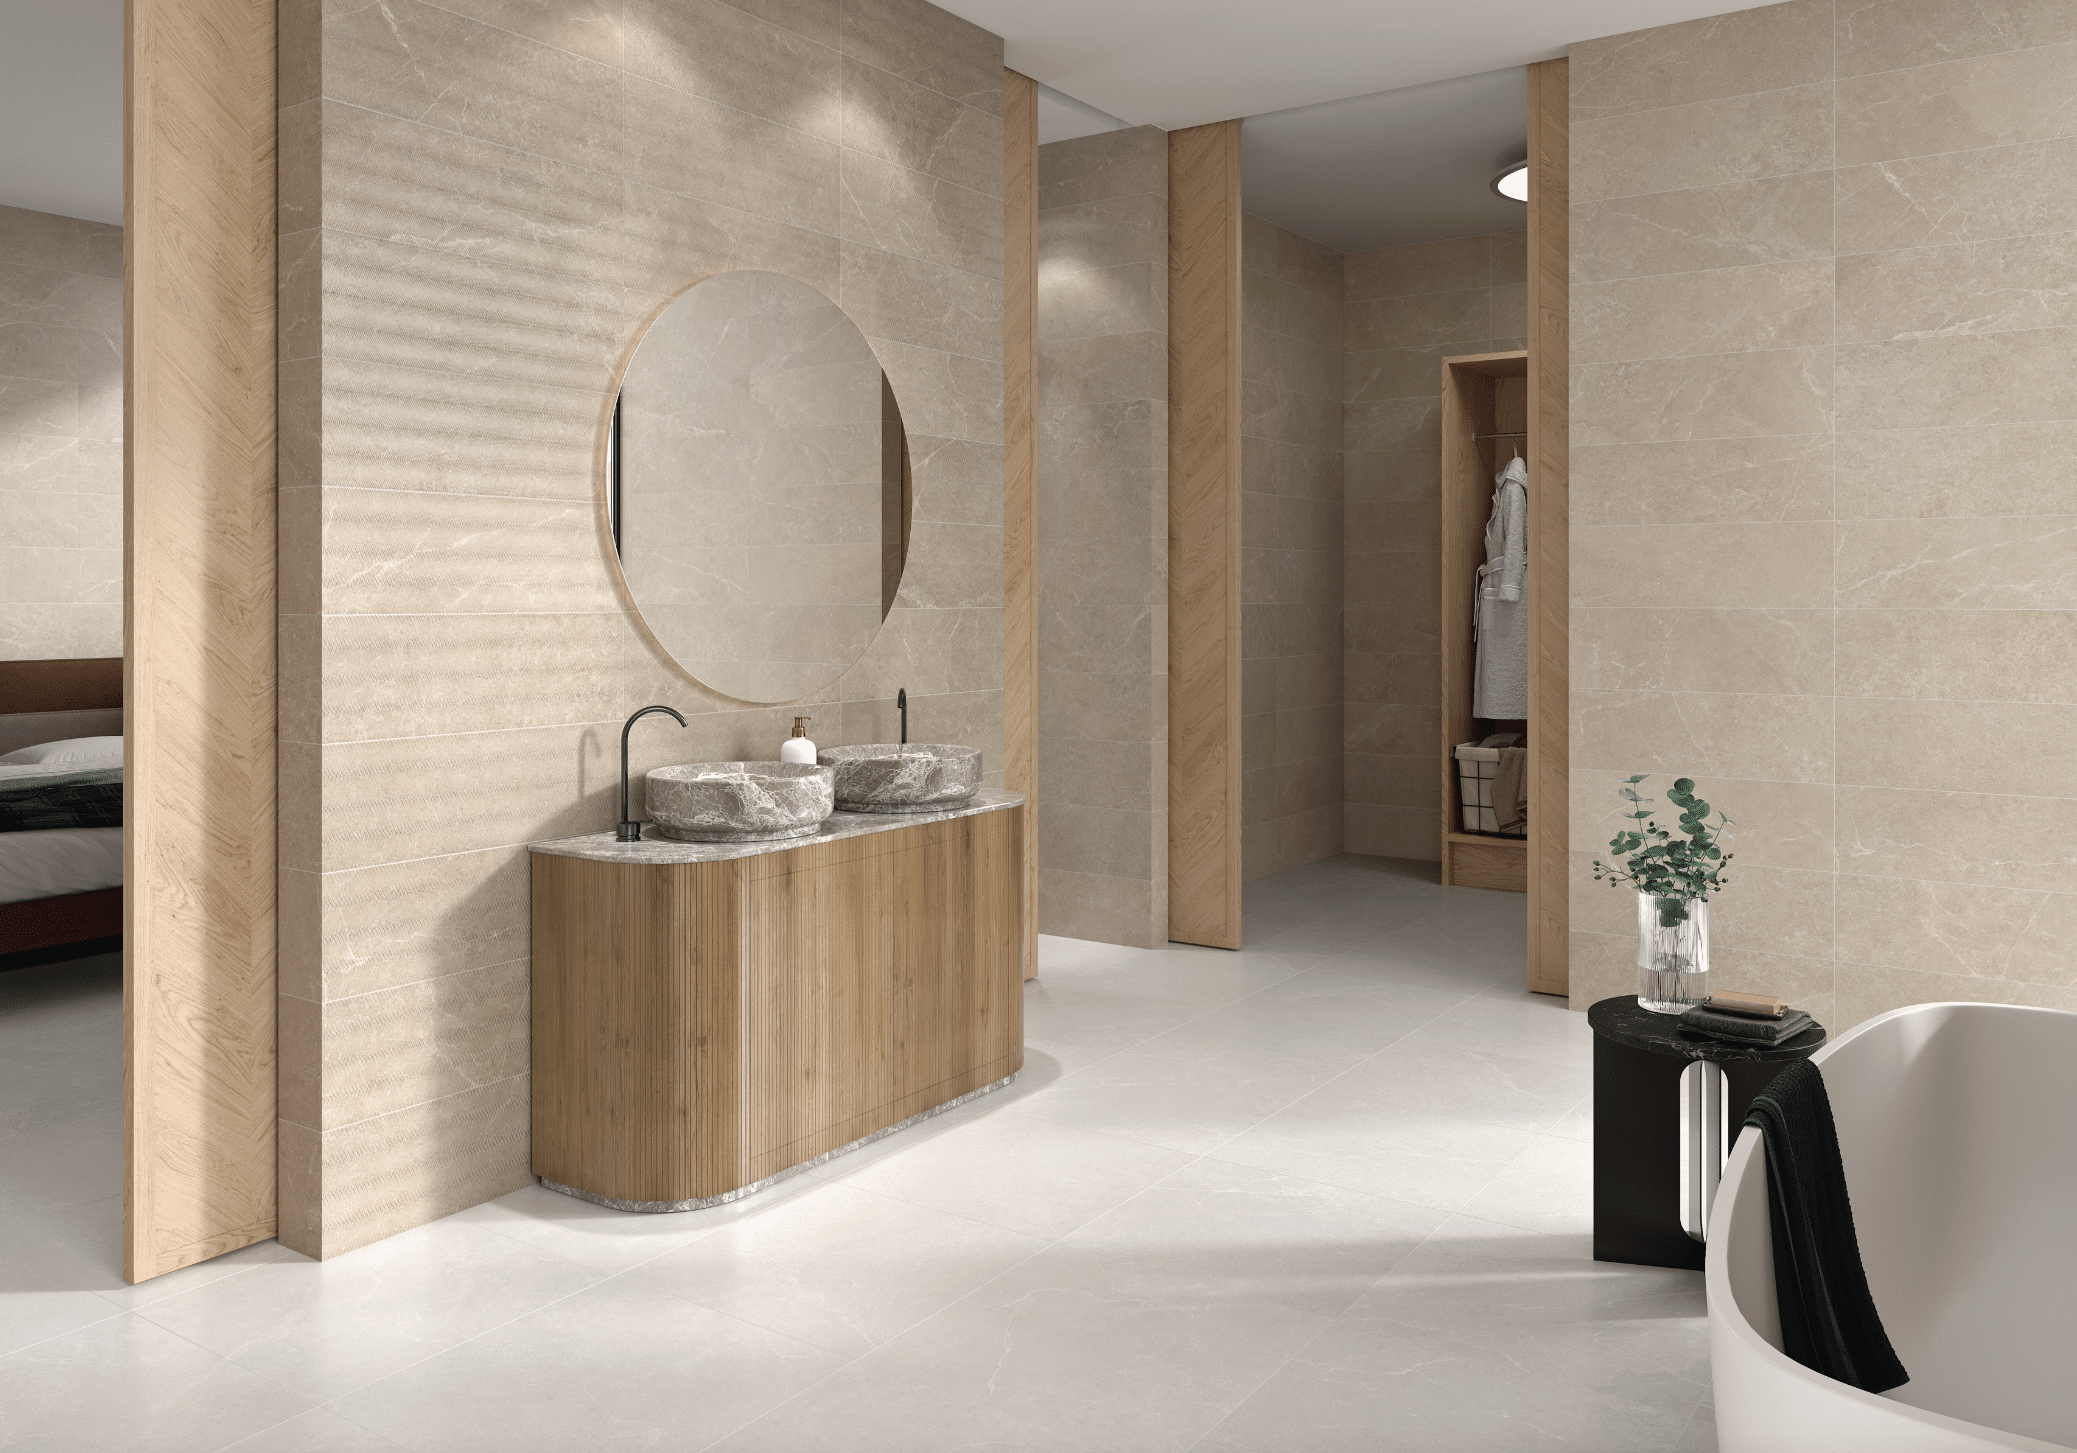 C. Bergmann zeigt ein offenes, gefliestes Badezimmer in Naturtönen mit einem Doppelwaschtisch, grauen Waschbecken und einer freistehenden Badewanne von Argenta.